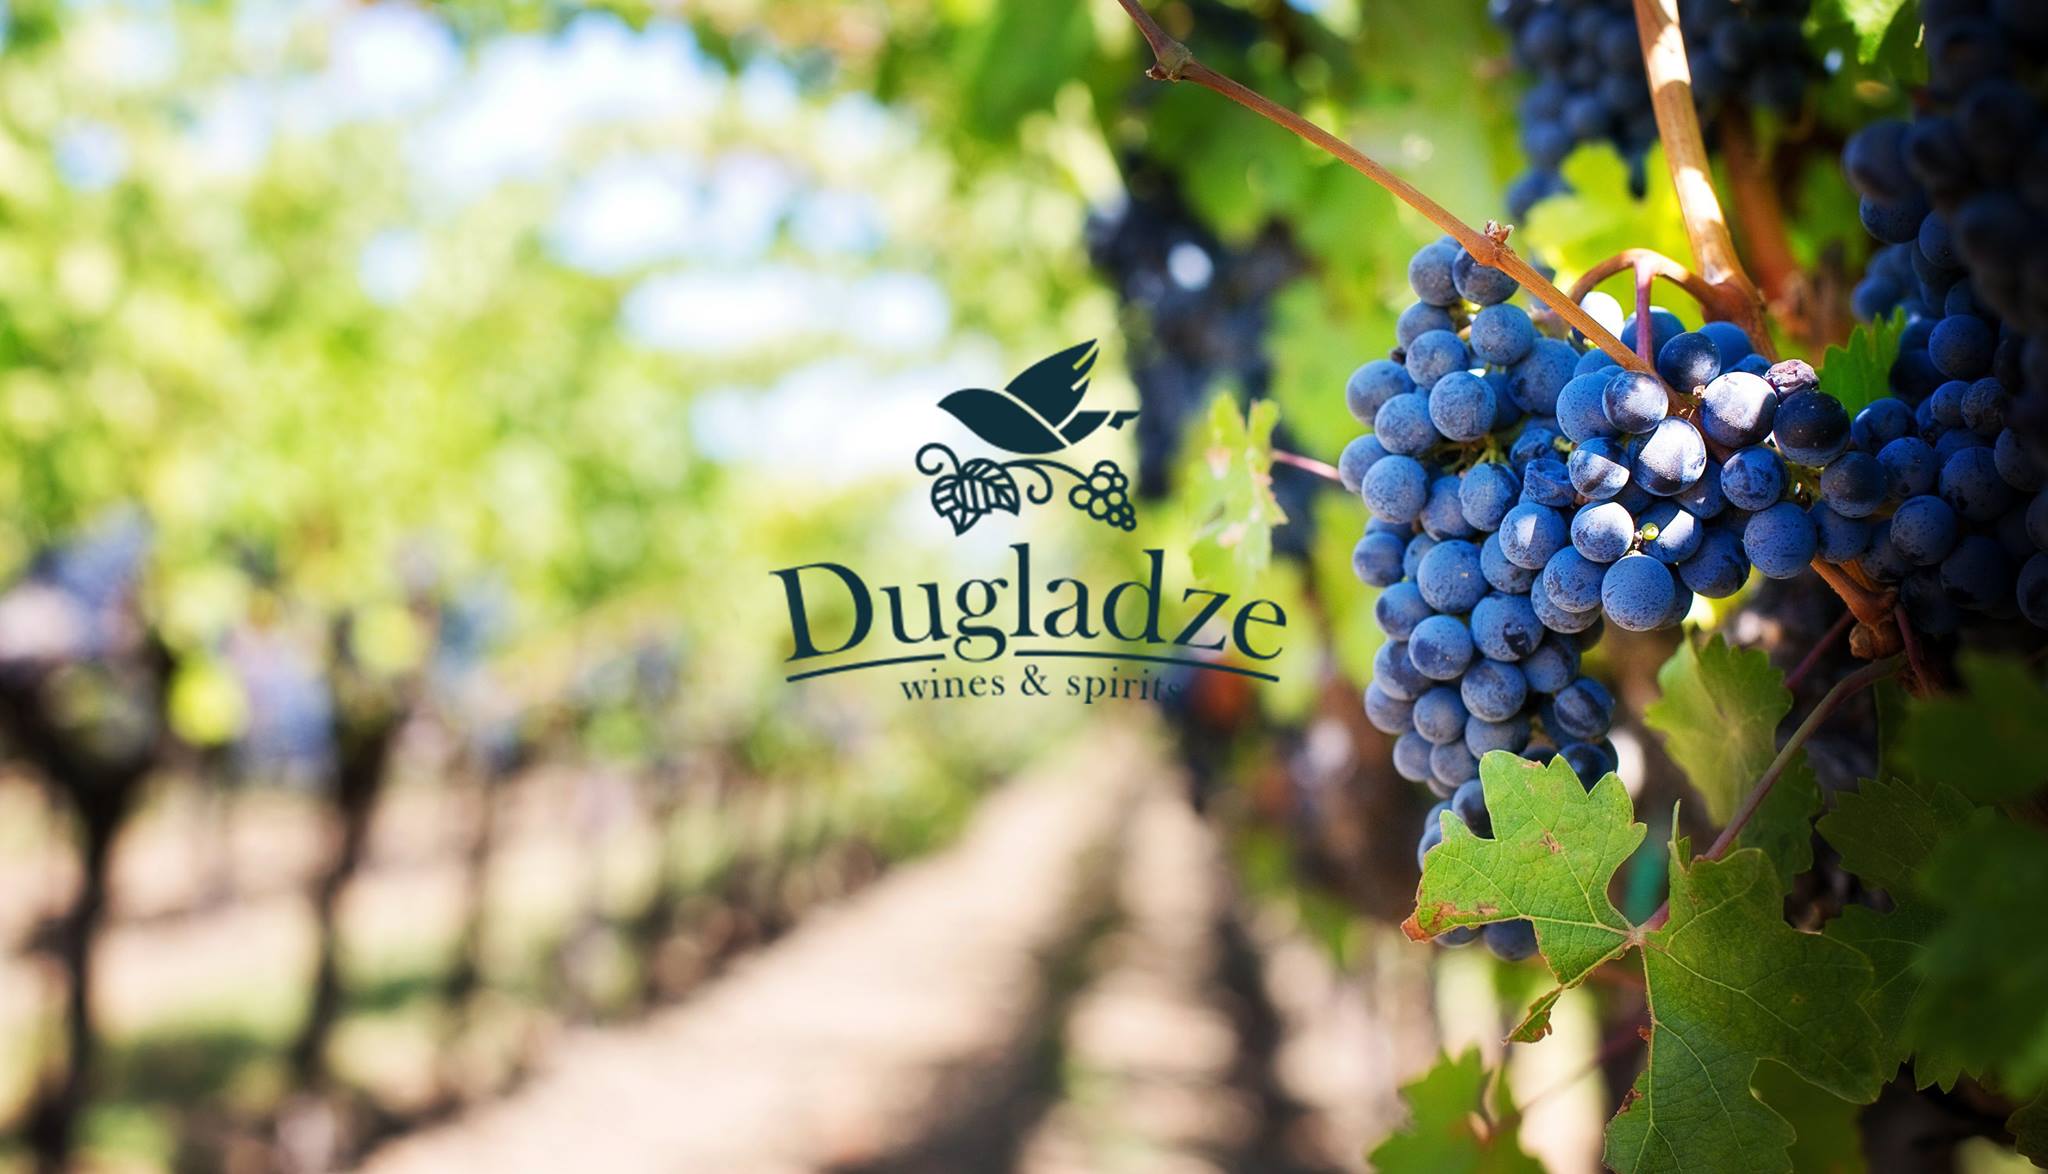 Dugladze Winery